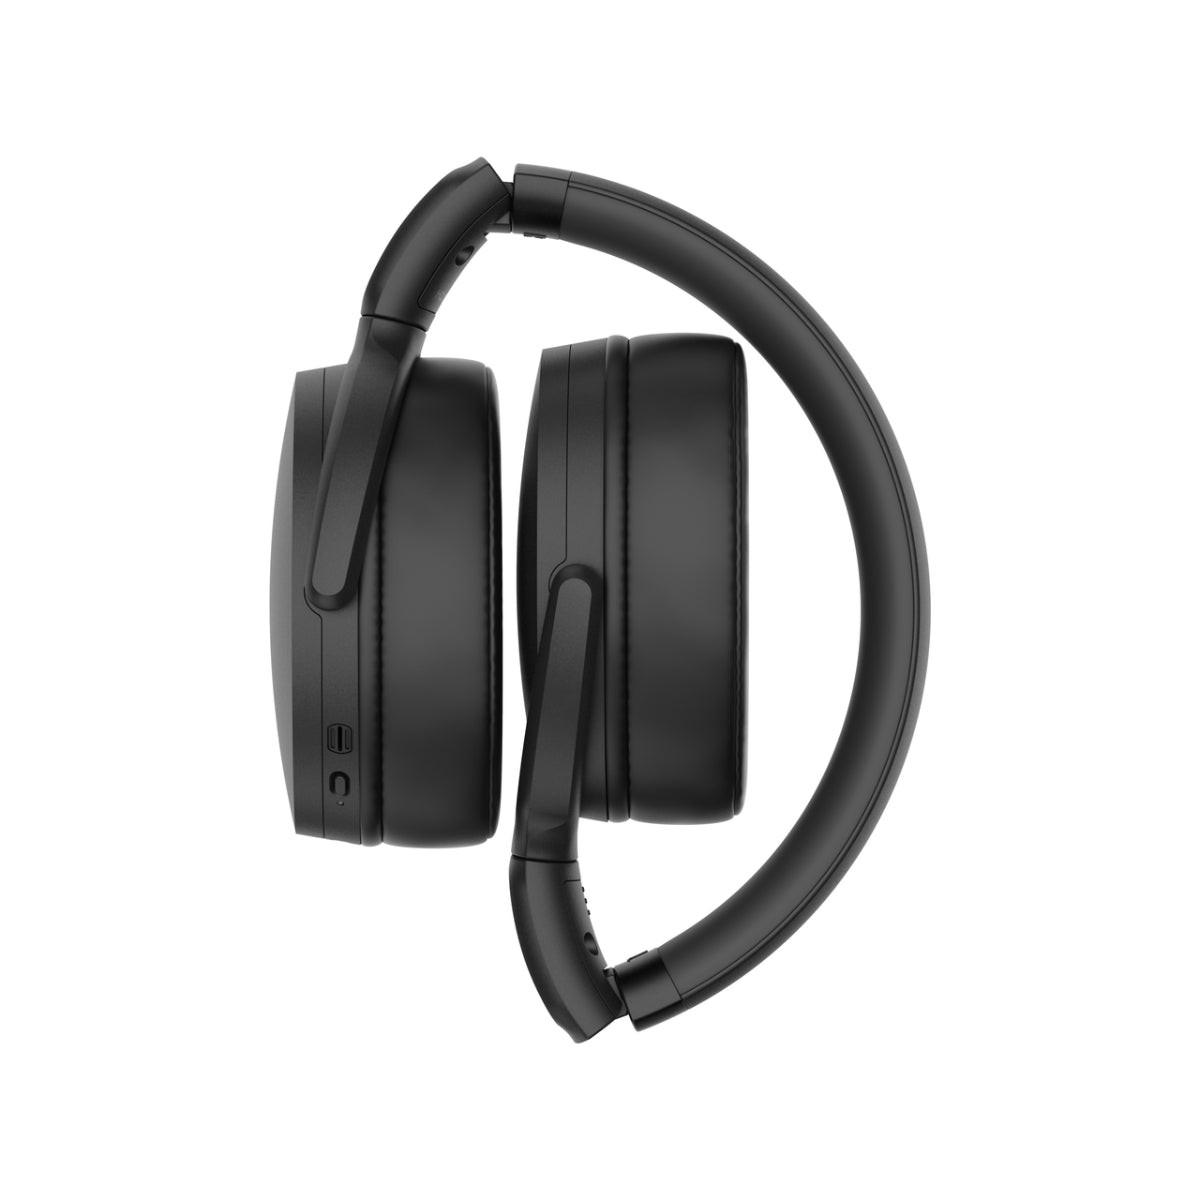 Sennheiser HD 350BT wireless headphones